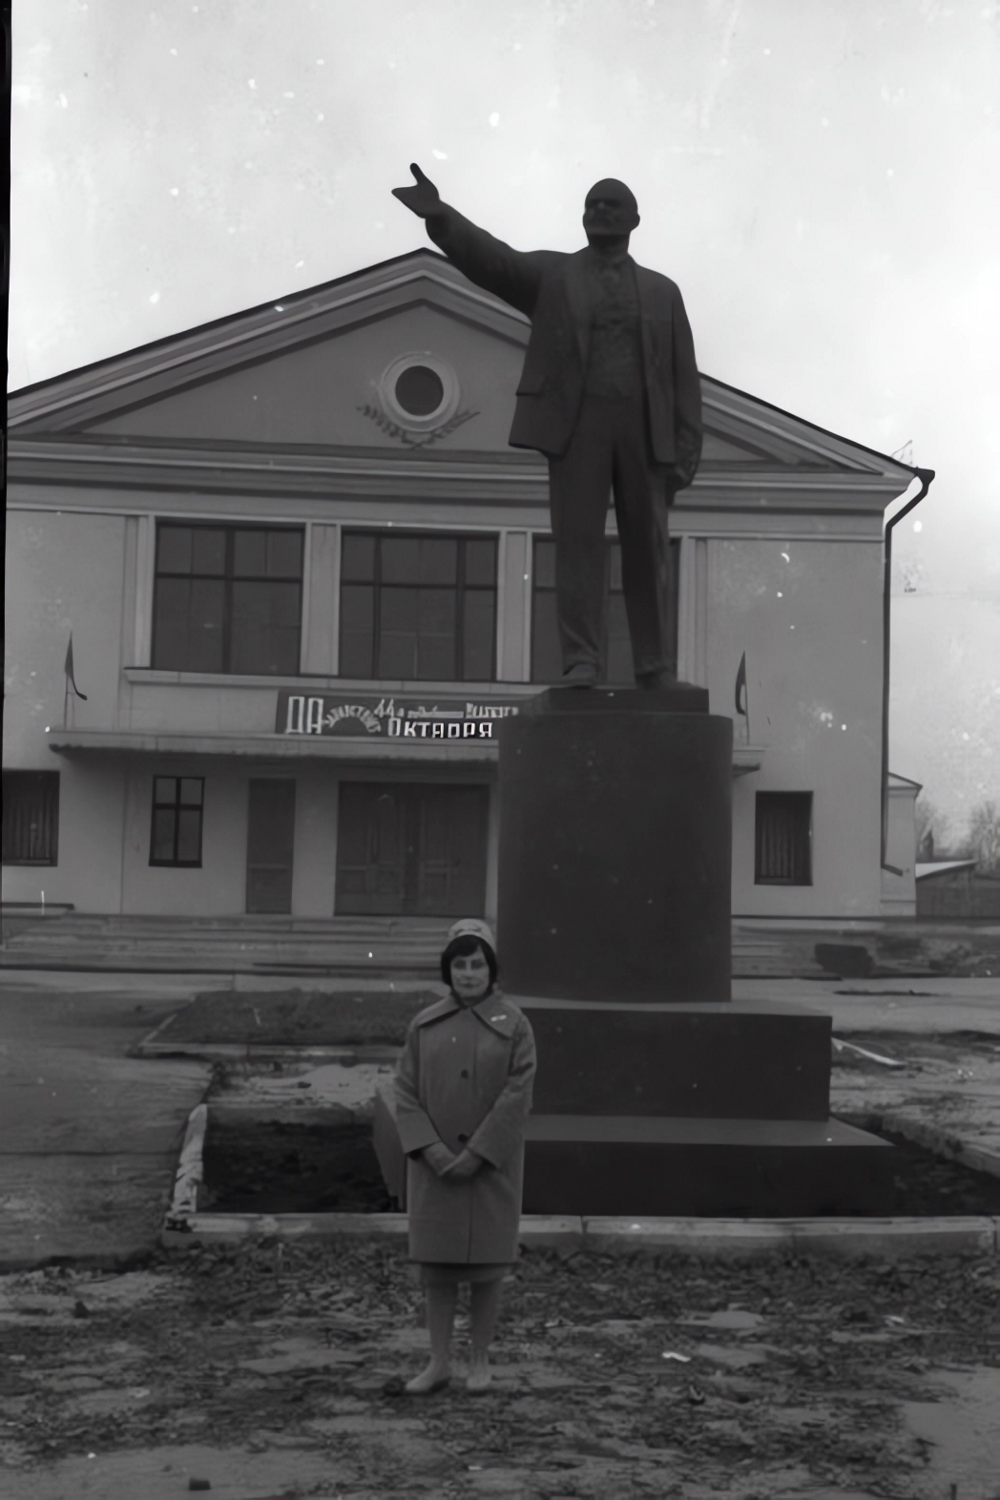 Моршанск, Тамбовская область. Кинотеатр "Октябрь" и памятник Ленину. 1961 год.